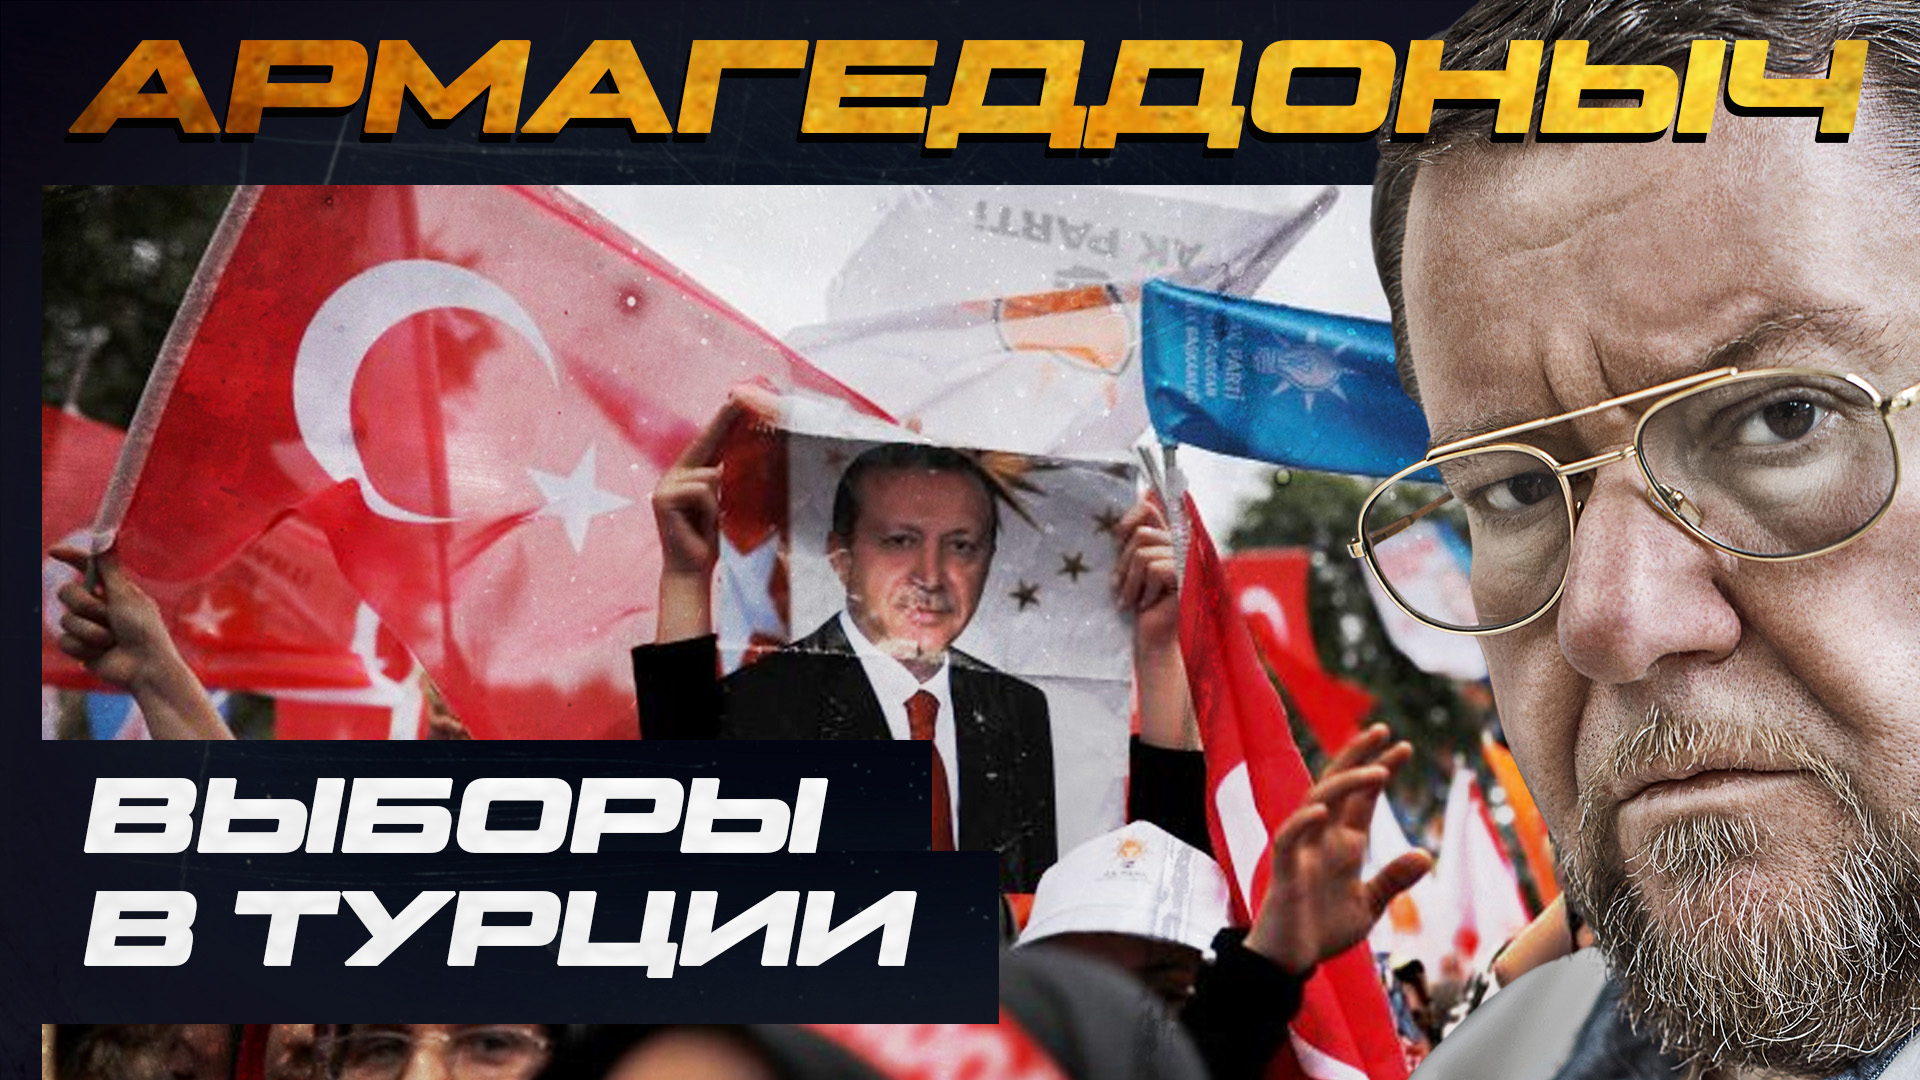 Разговор с умным человеком | Иван Стародубцев | Выборы в Турции | АРМАГЕДДОНЫЧ